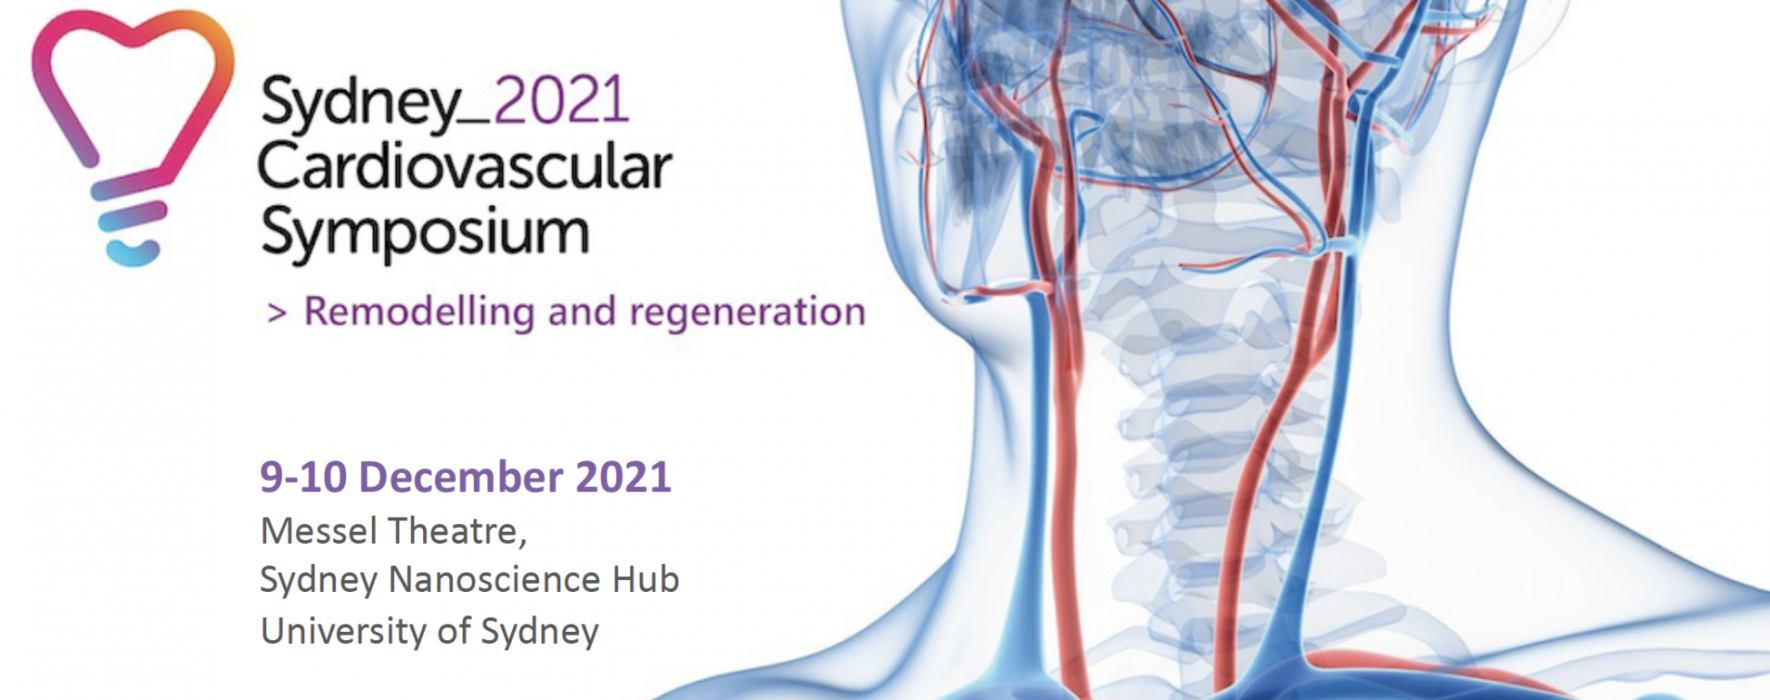  Sydney Cardiovascular Symposium 2021